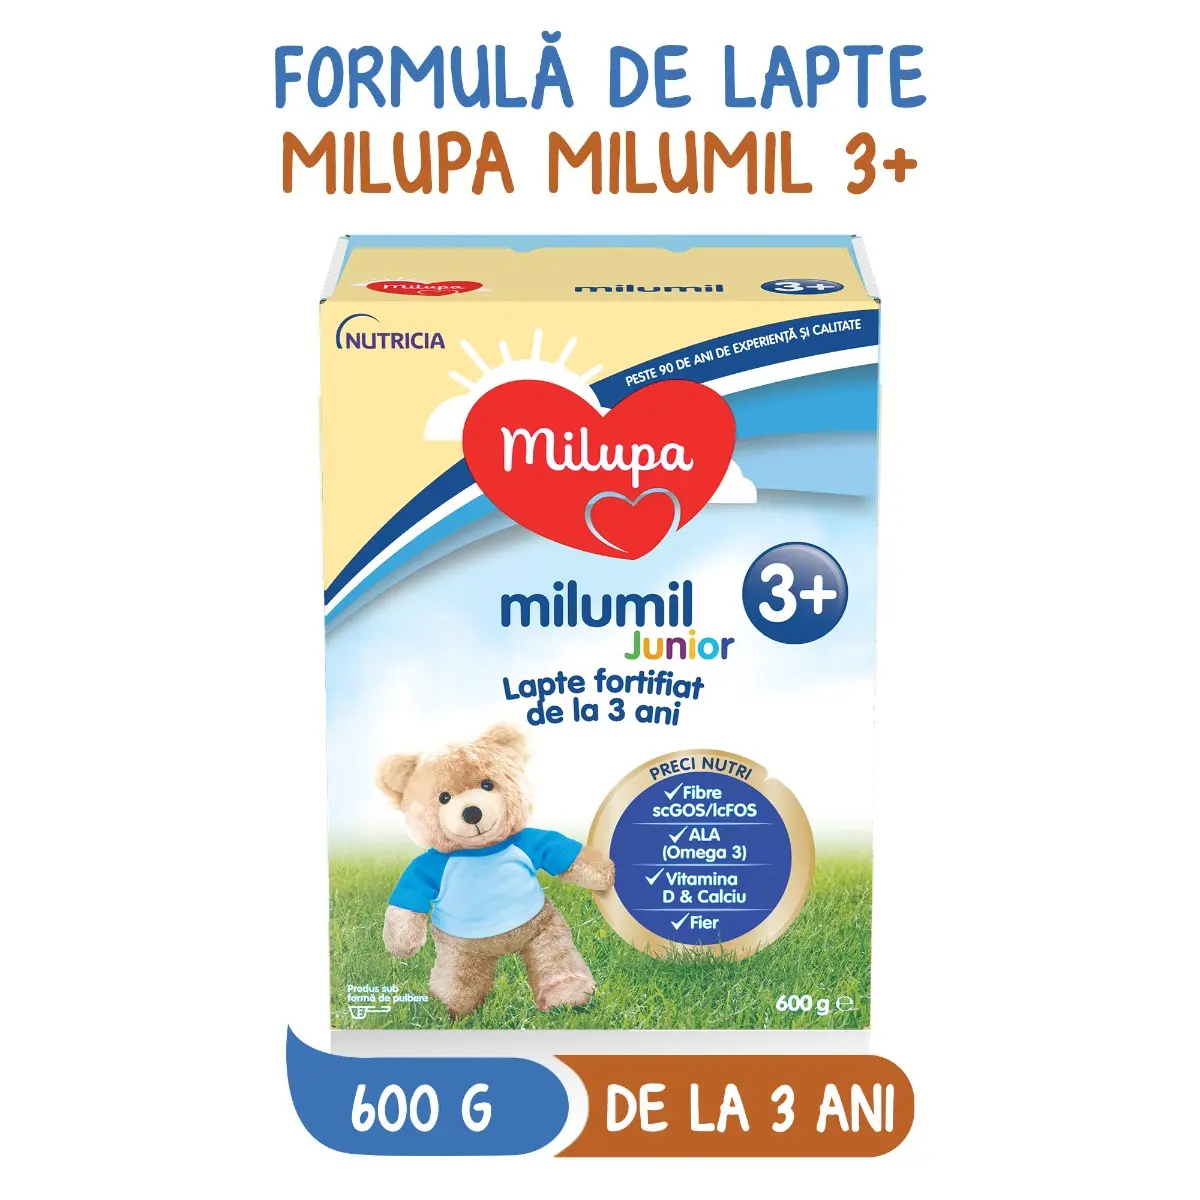 Lapte praf Milupa Milumil Junior, de la 3 ani, 600 g